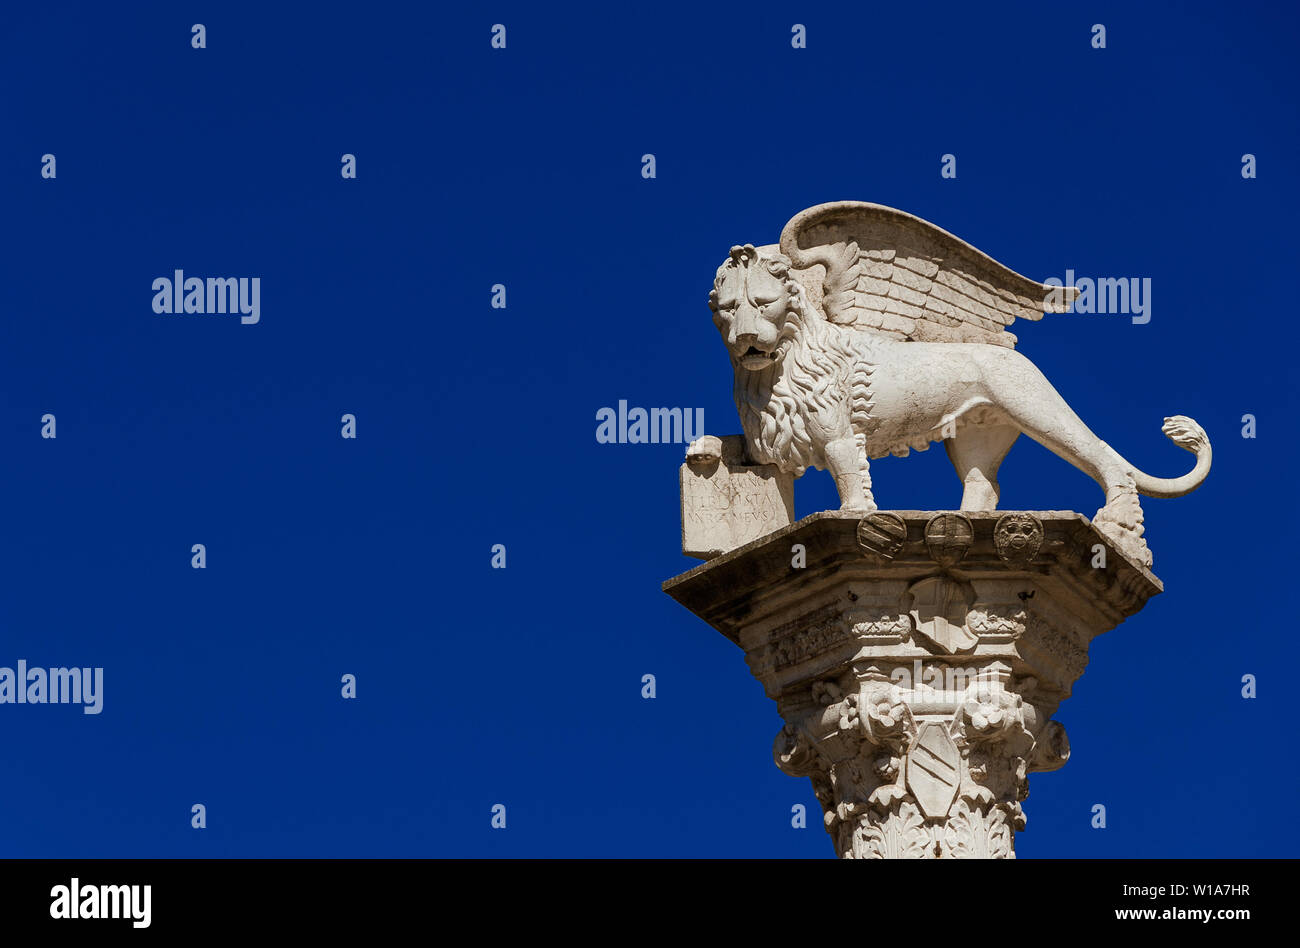 El león de San Marcos, símbolo de la antigua República de Venecia. Monumento erigido en 1473 en Vicenza plaza central (con copia espacio) Foto de stock